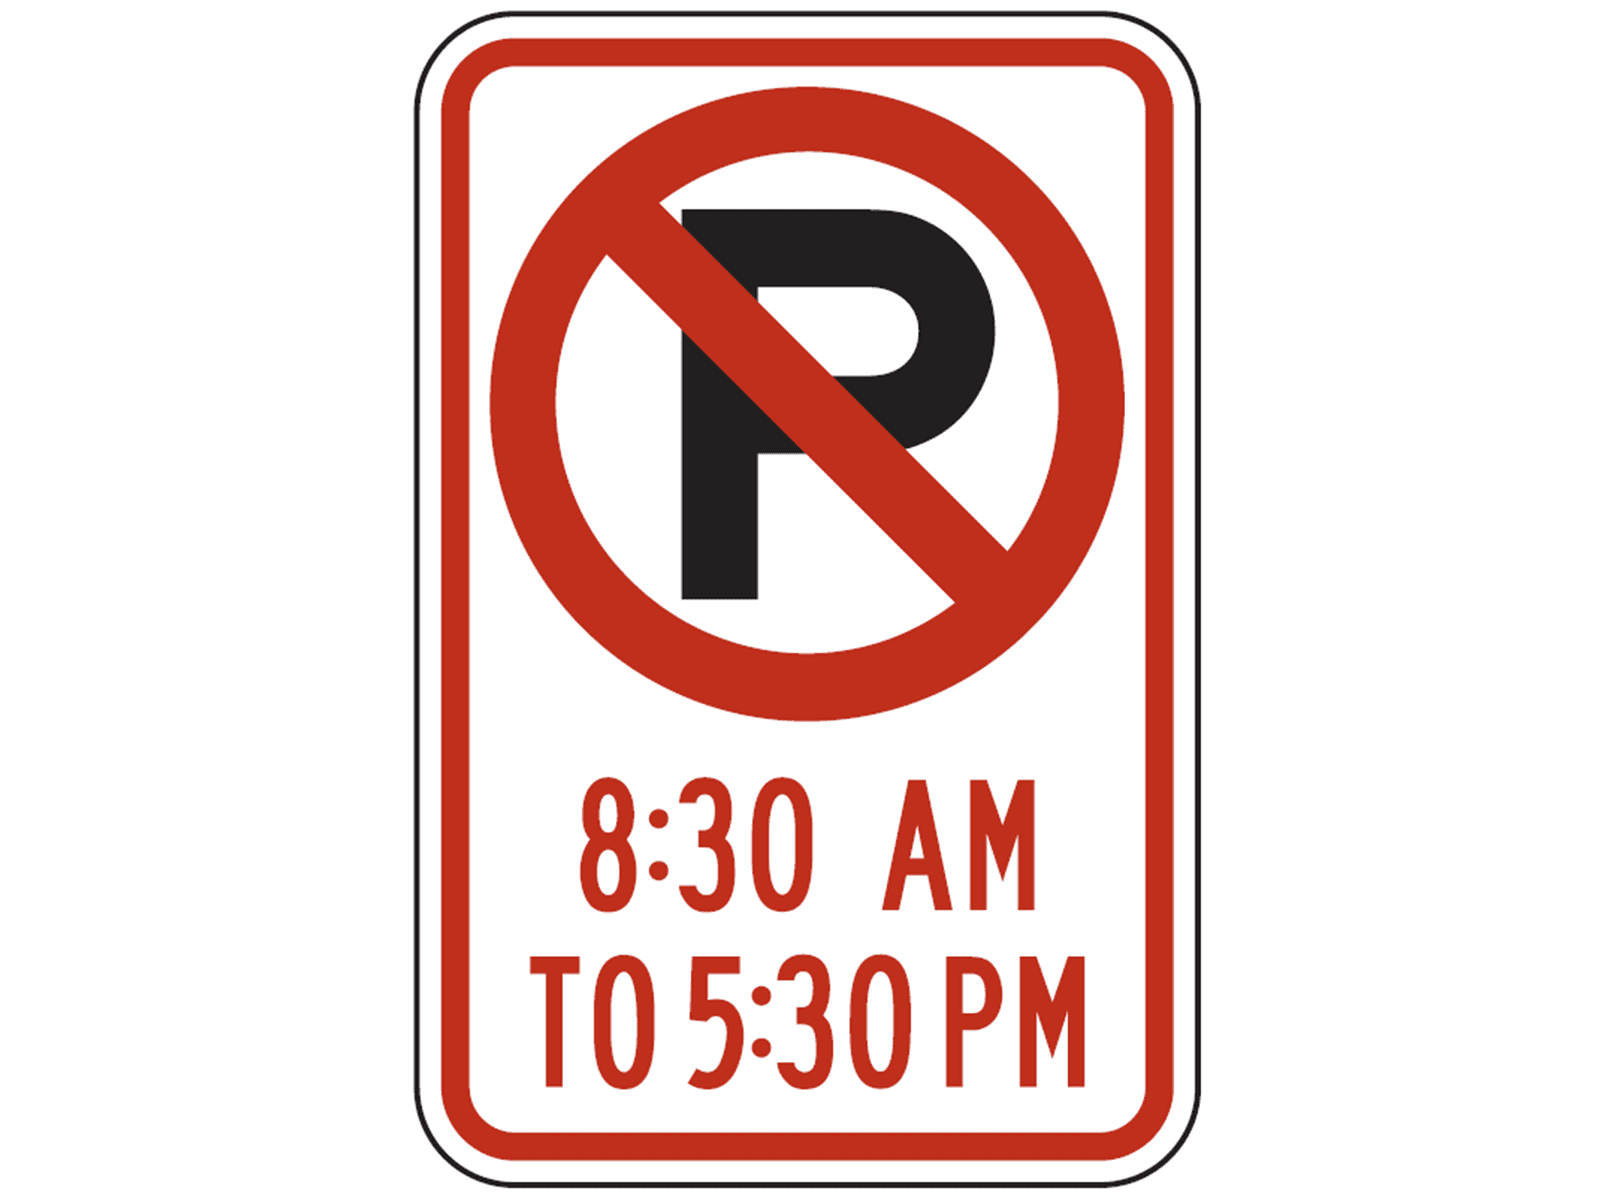 R7-2 R7-2 - R7: Parking / No Parking